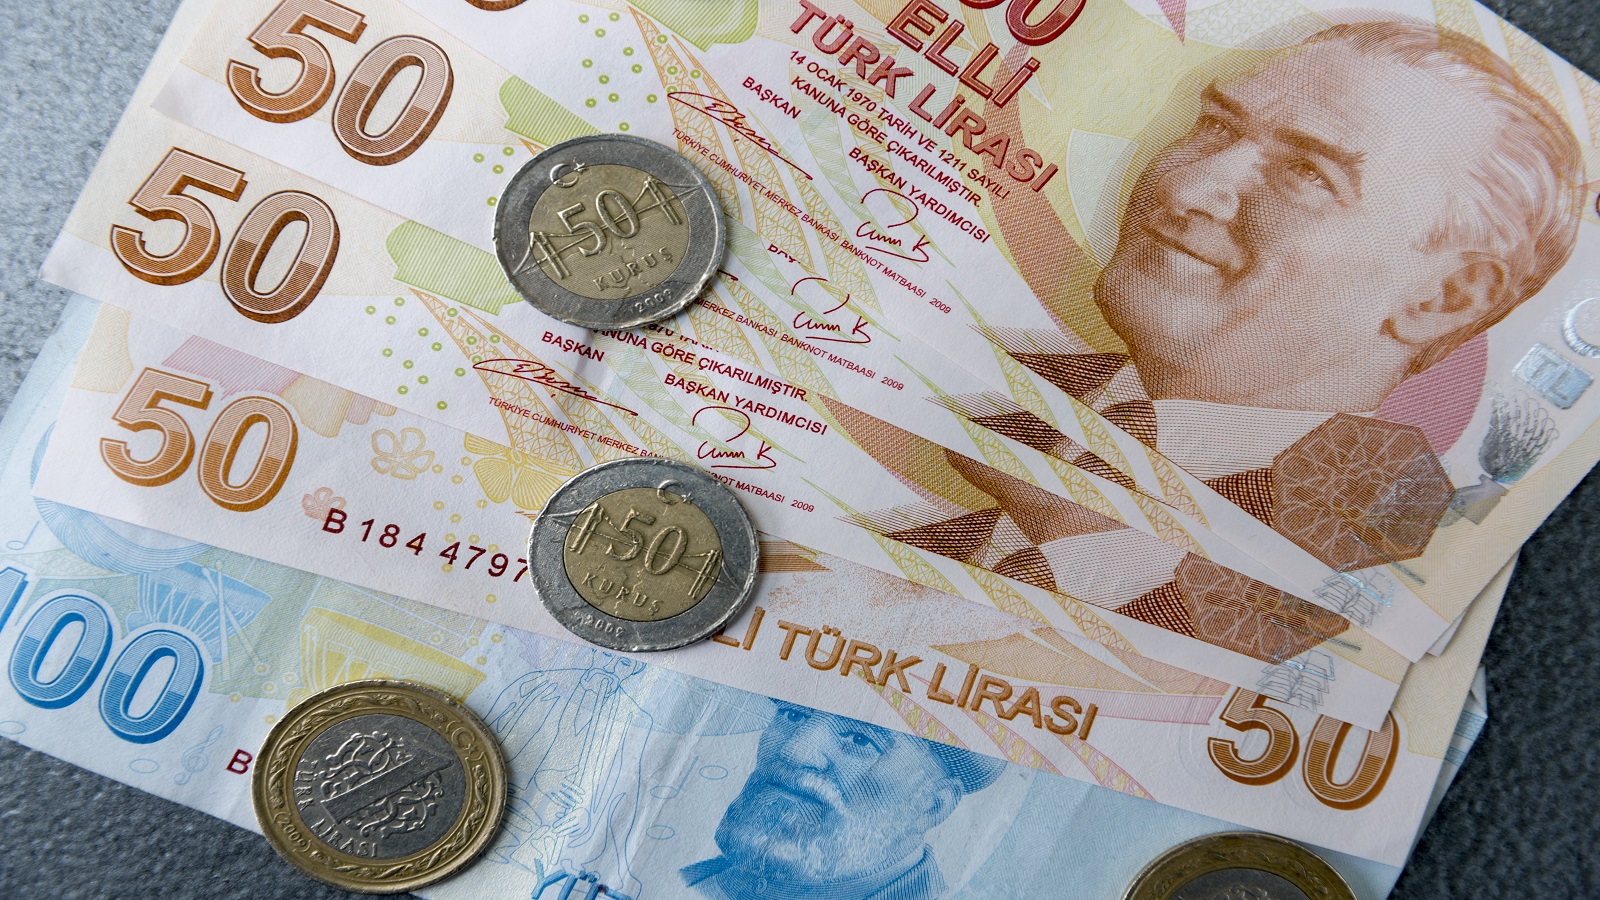 شمال سوريا:حكومة الانقاذ تعتمد الدولار بدل العملة التركية..جزئياً